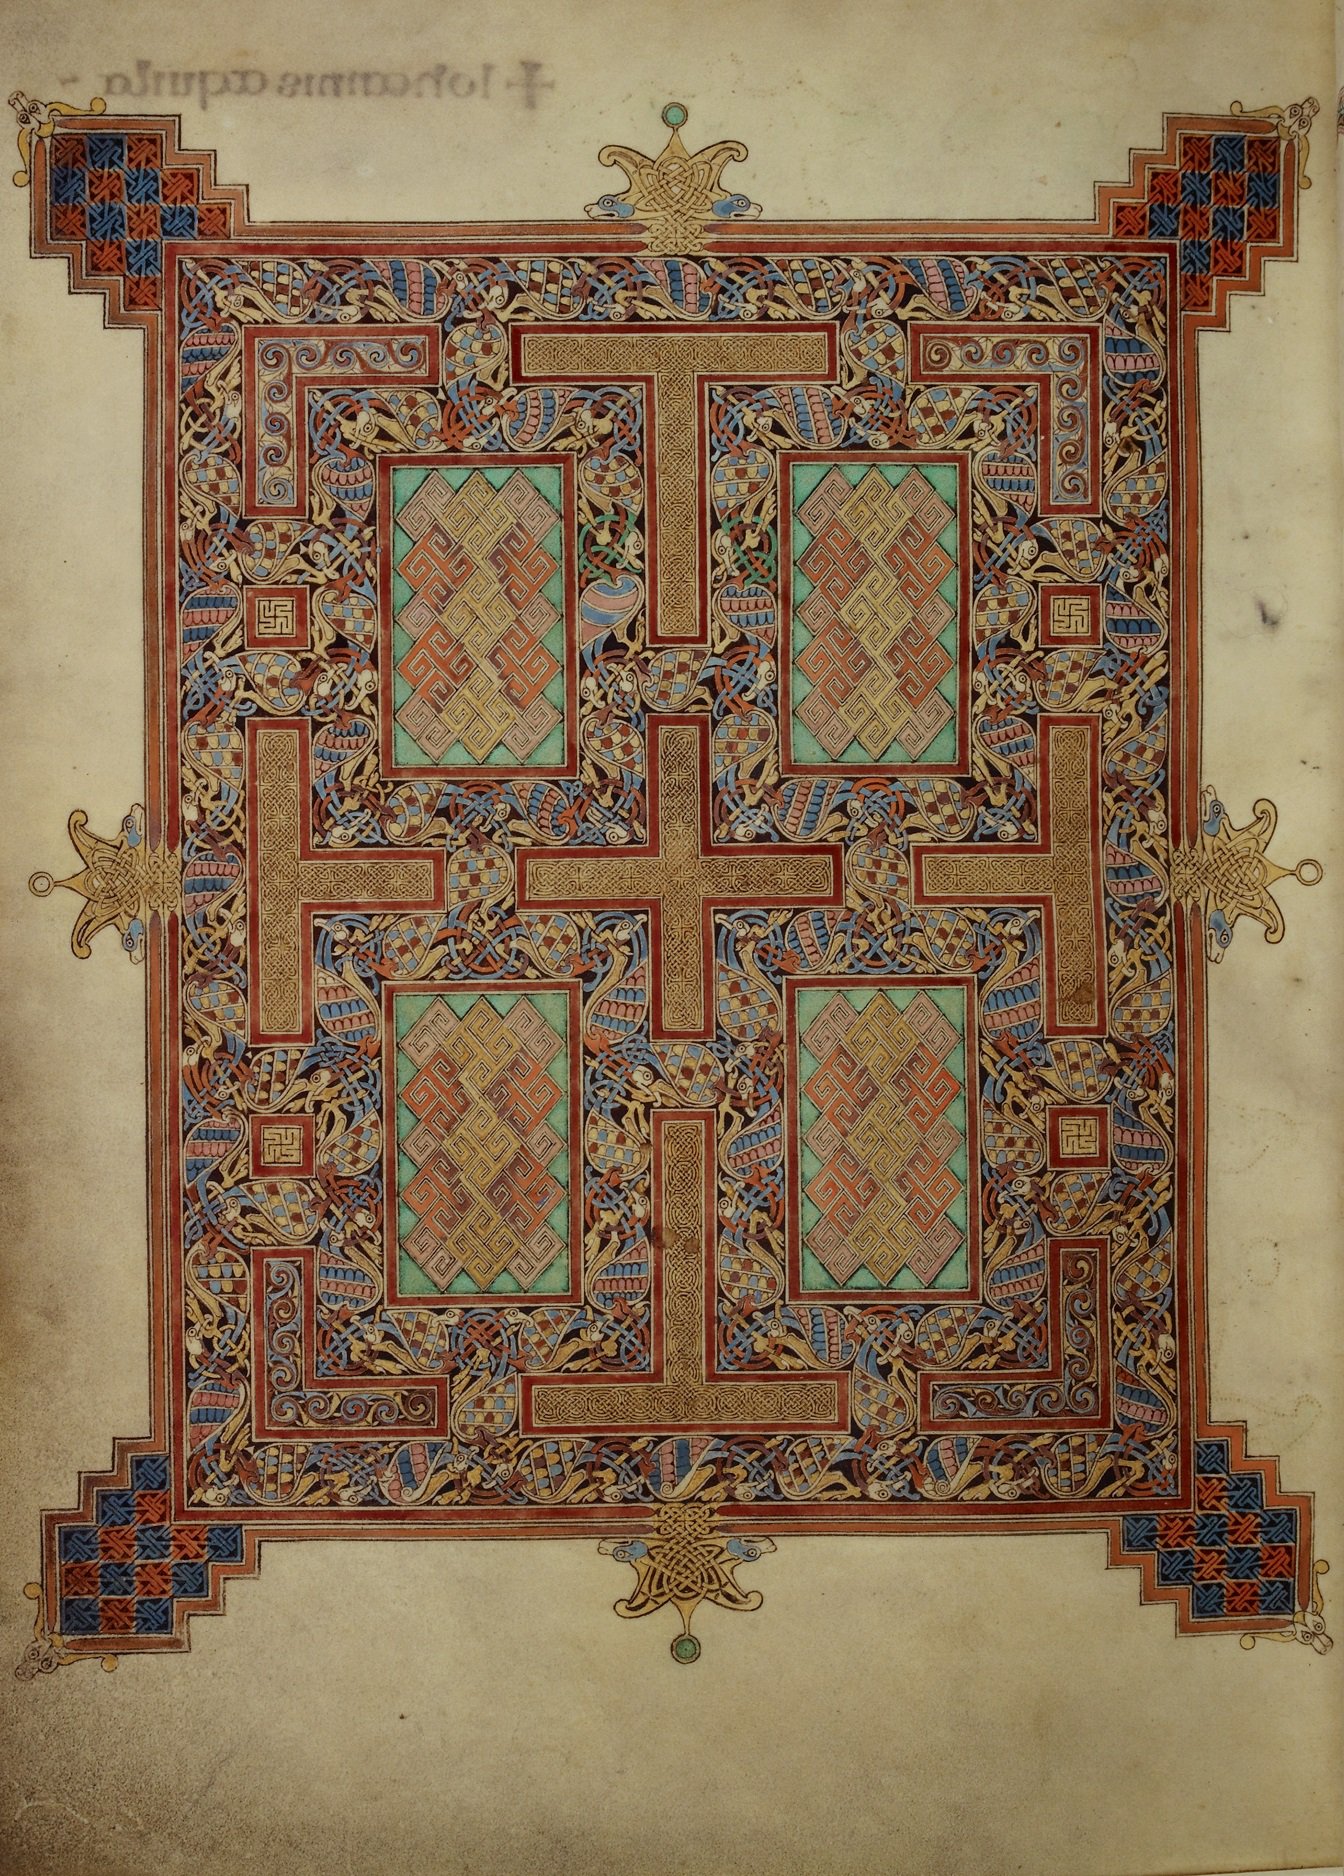 Lindisfarne Gospels carpet page